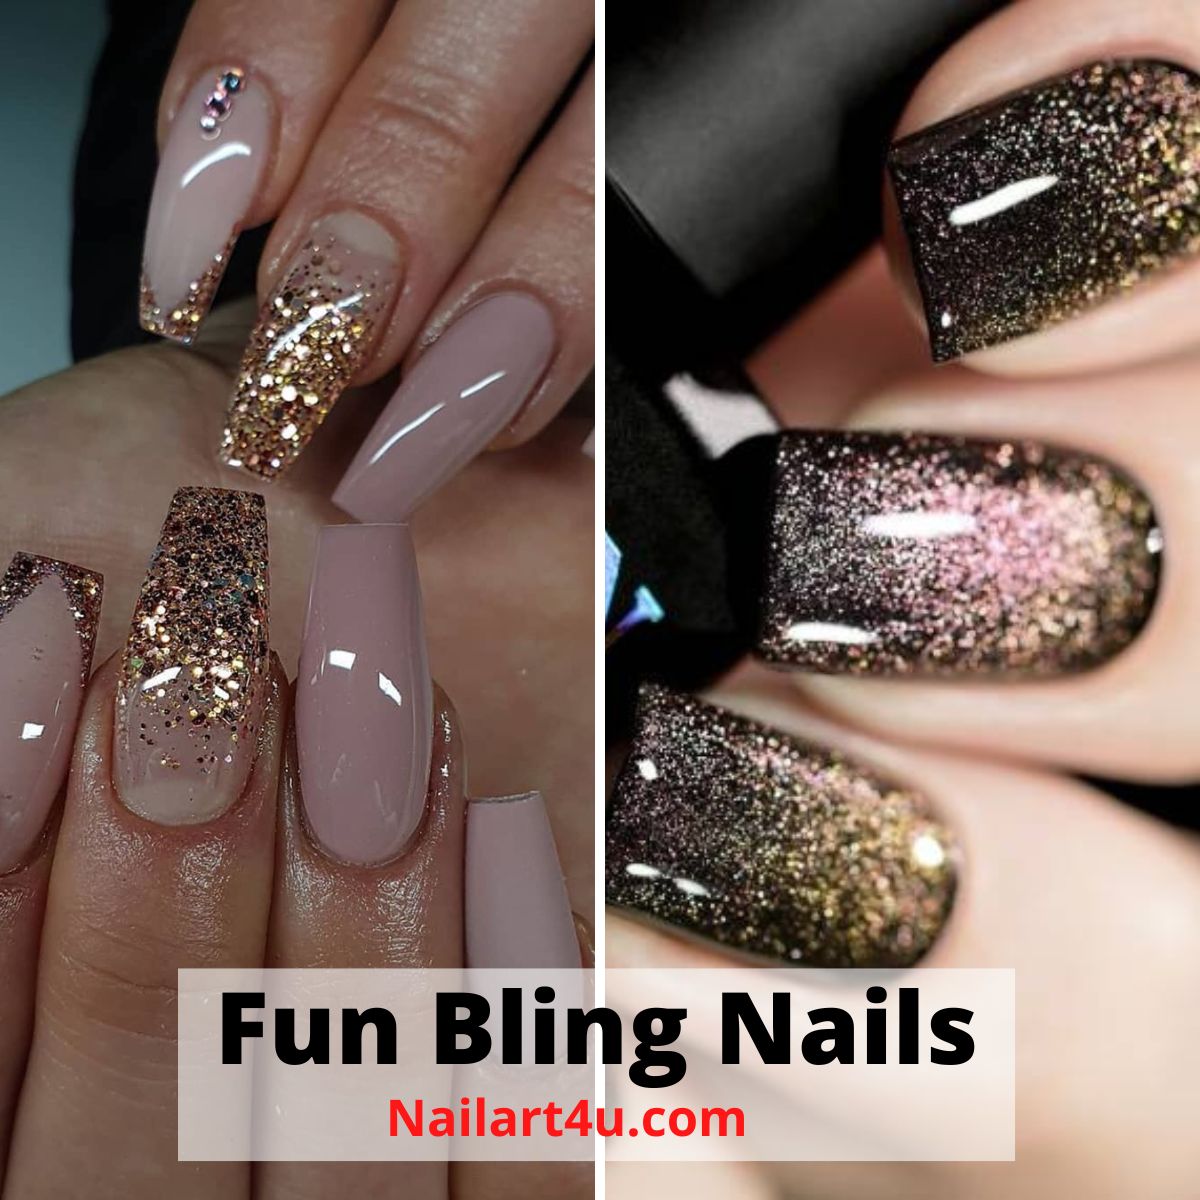 Fun Bling Nails